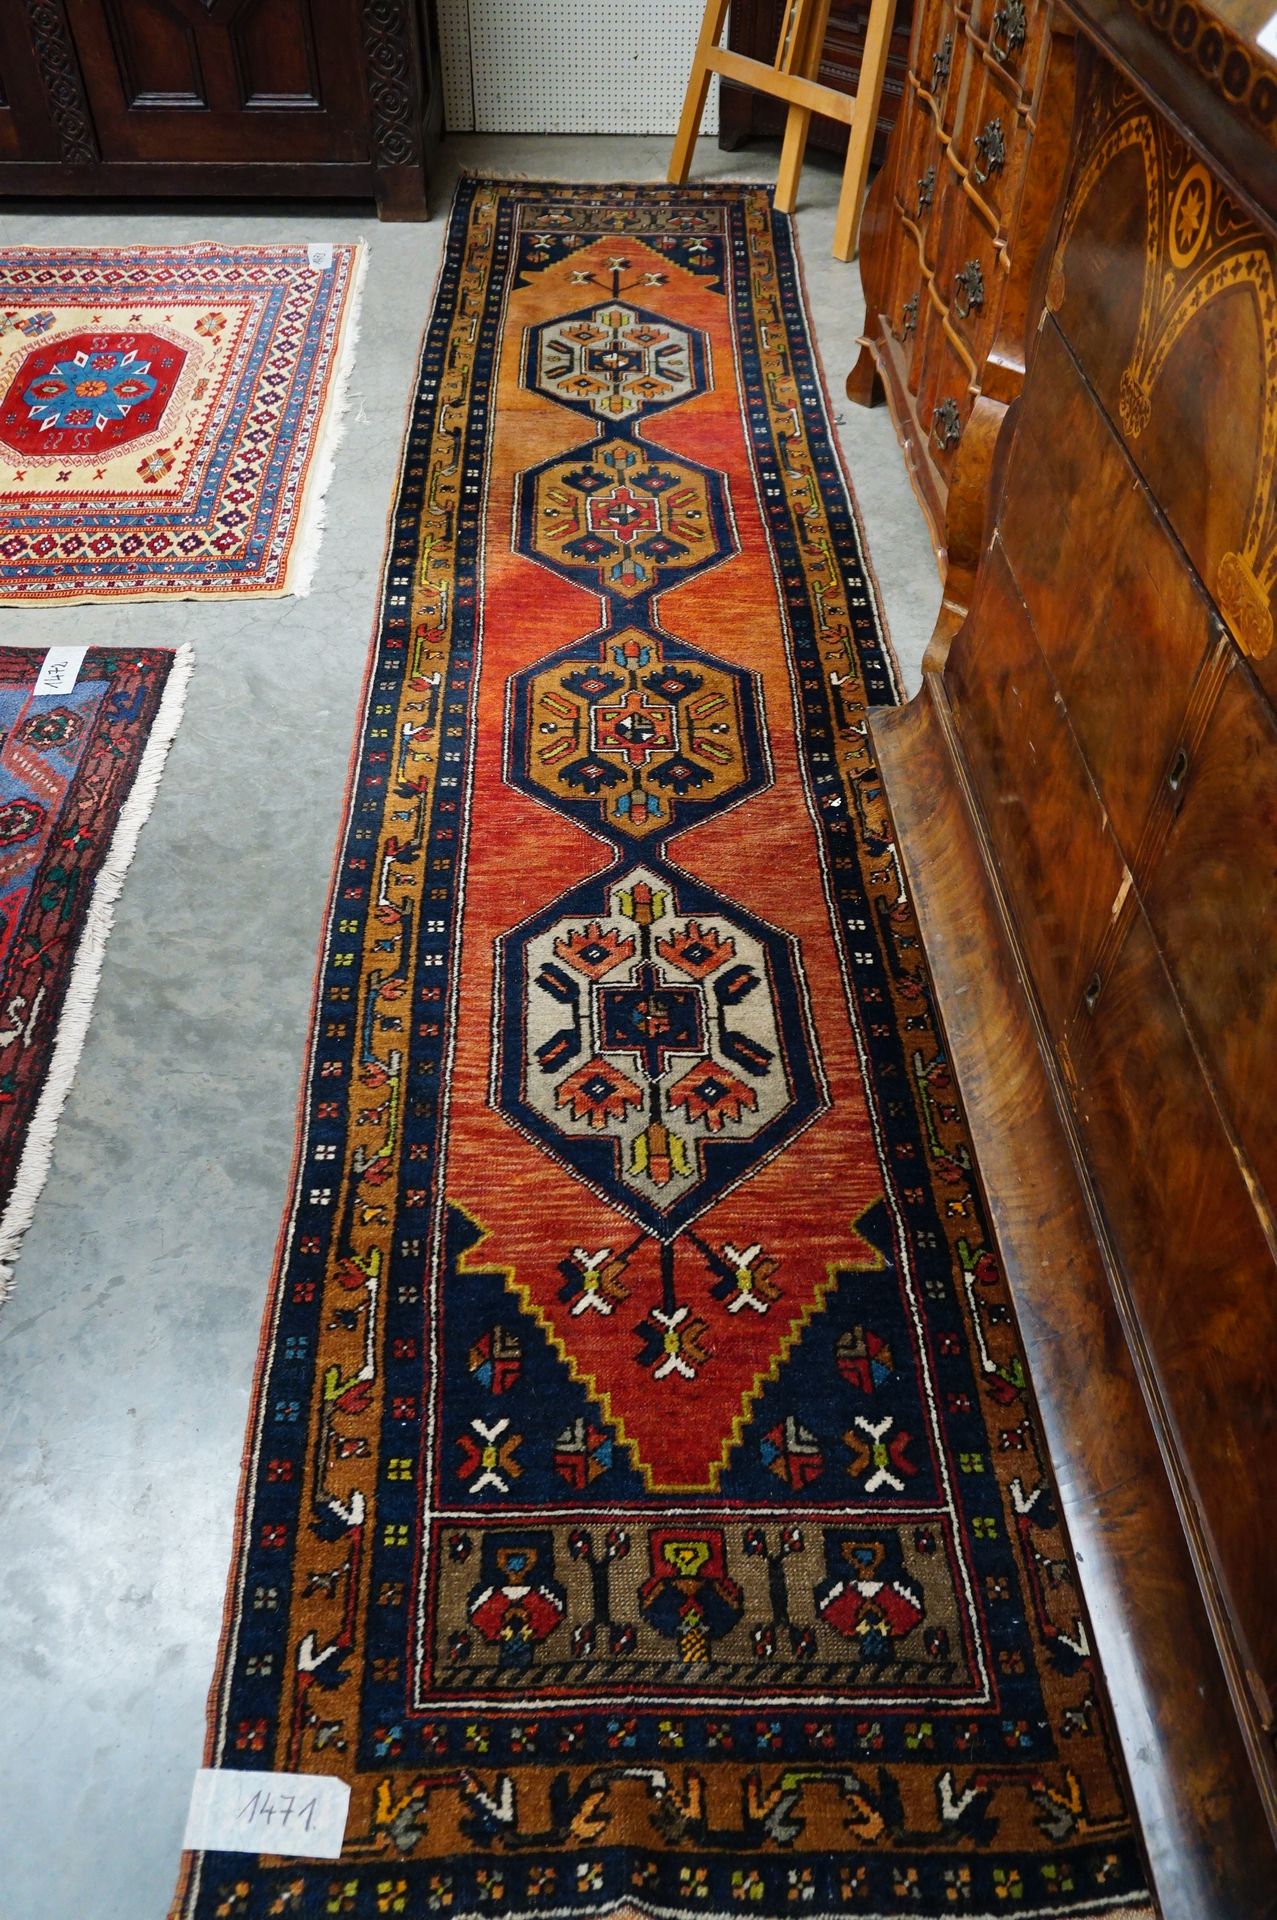 Null Iranischer Teppich - 3,25 x 0,70